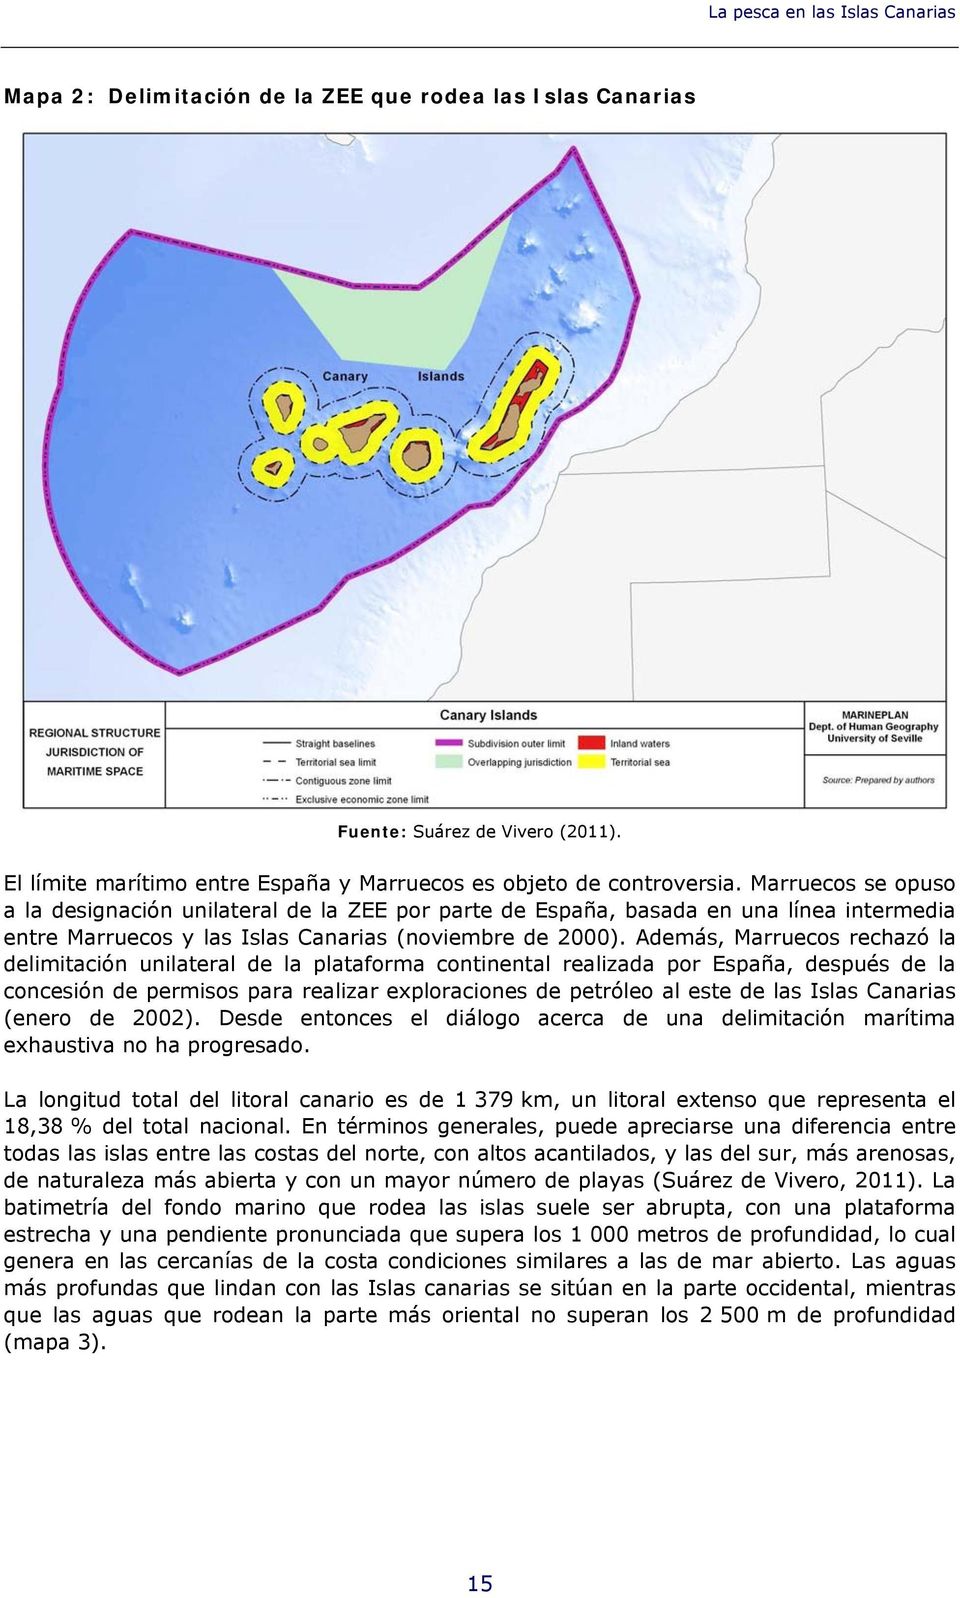 Además, Marruecos rechazó la delimitación unilateral de la plataforma continental realizada por España, después de la concesión de permisos para realizar exploraciones de petróleo al este de las